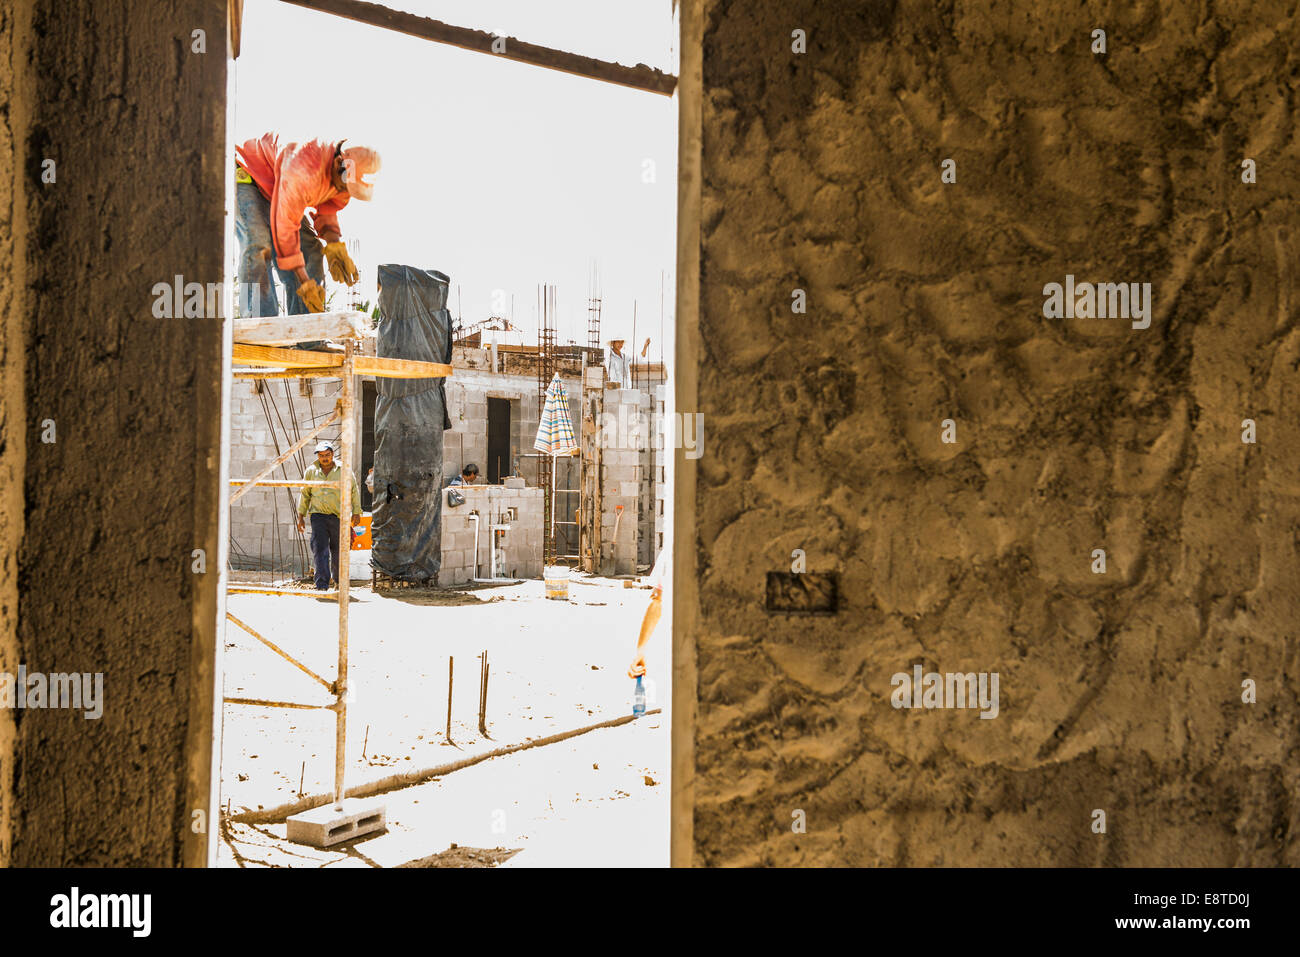 Hispanische Bauarbeiter auf der Baustelle Stockfoto